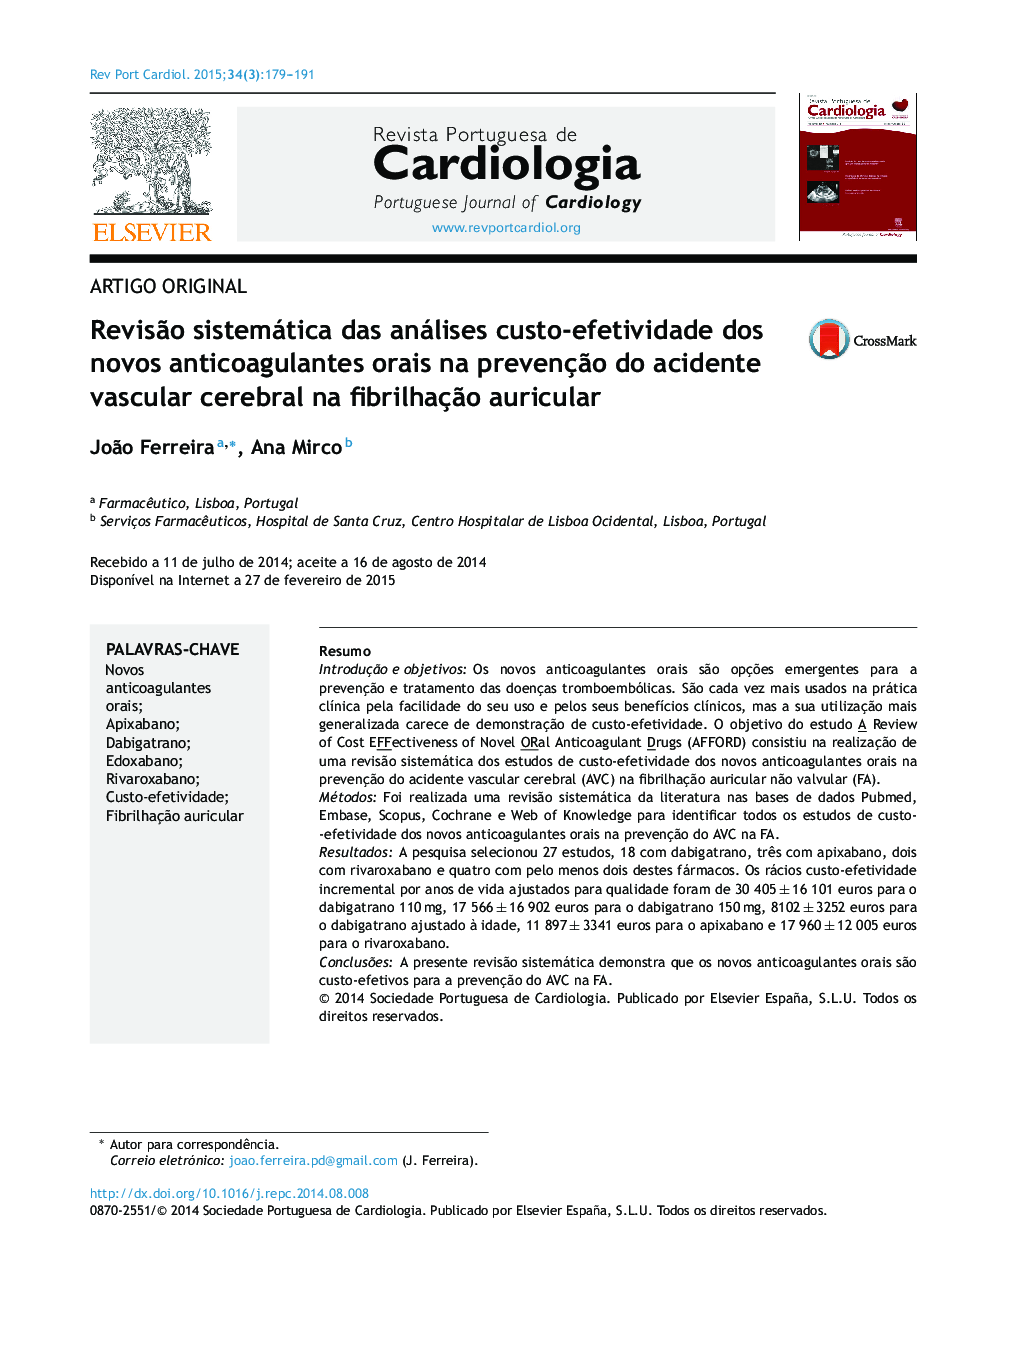 Revisão sistemática das análises custo‐efetividade dos novos anticoagulantes orais na prevenção do acidente vascular cerebral na fibrilhação auricular